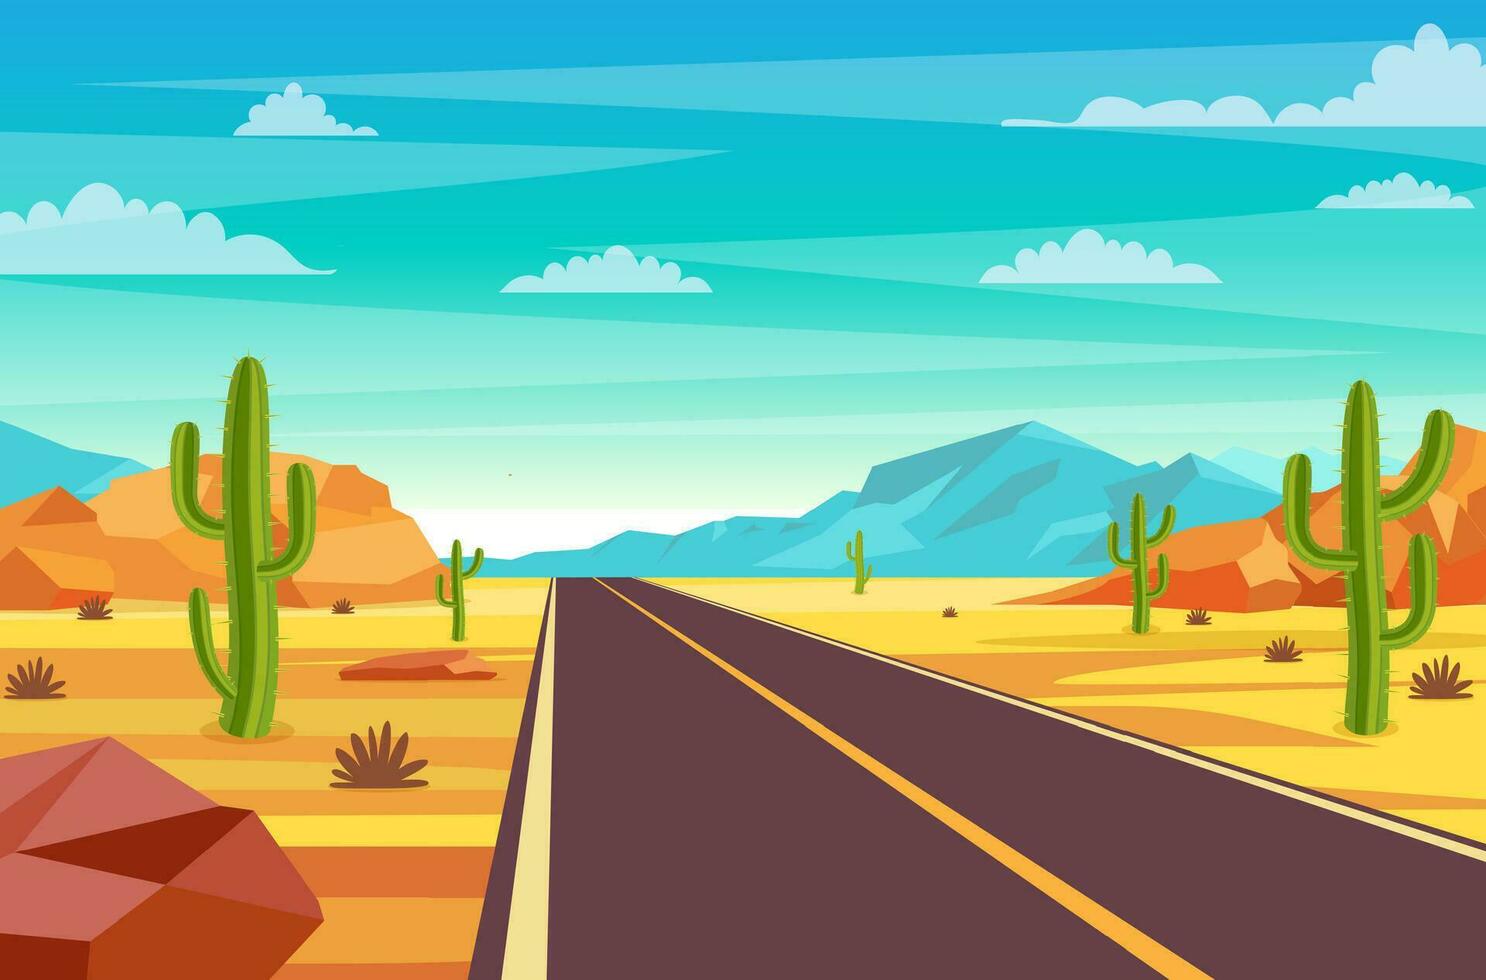 tömma motorväg väg i öken. sandig öken- landskap med väg, stenar och kaktusar. sommar Västra amerikan landskap. motorväg i arizona eller mexico varm sand. vektor illustration i platt stil